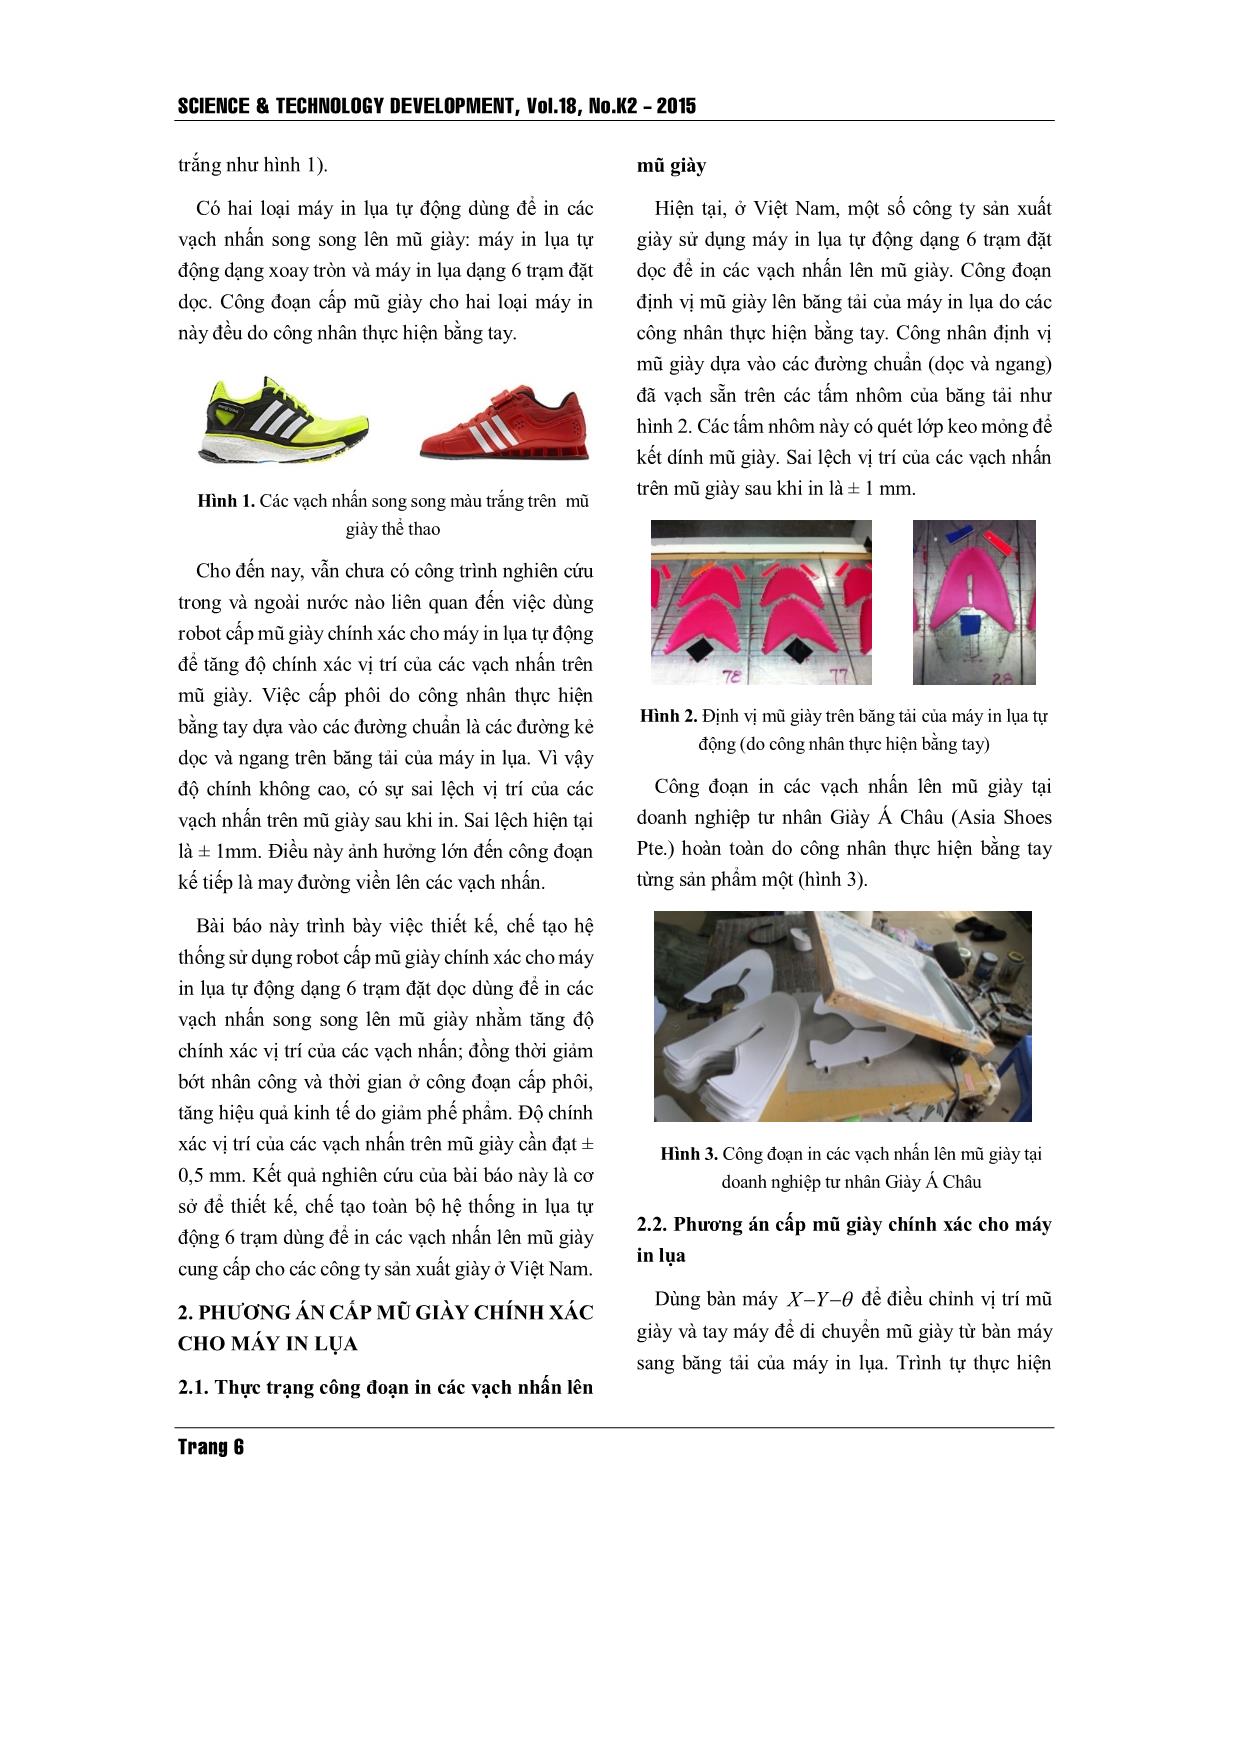 Thiết kế và chế tạo hệ thống cấp mũ giày chính xác cho máy in lụa trong công nghiệp giày trang 2